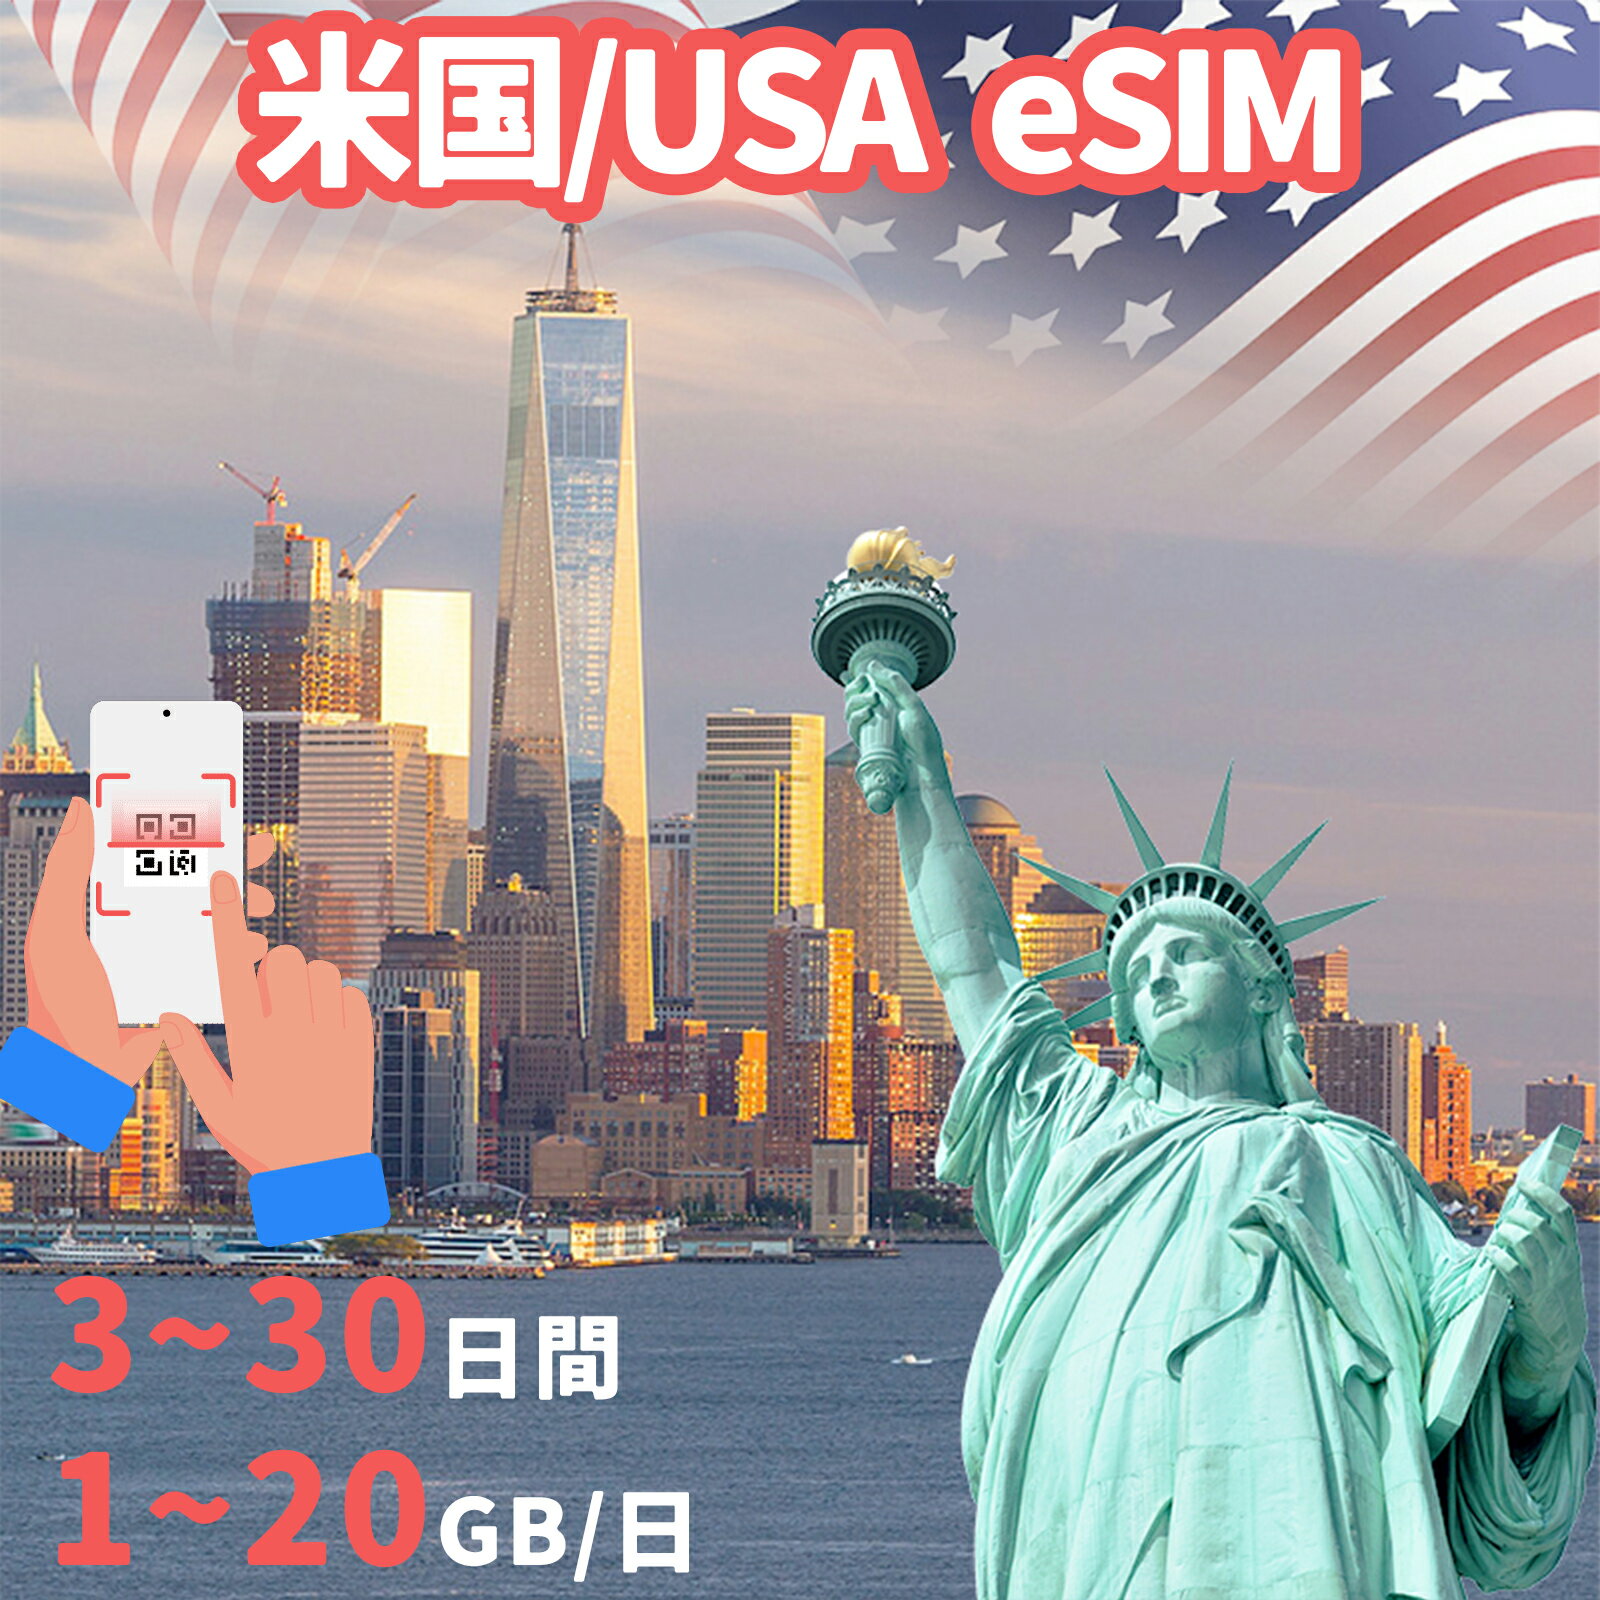 米国eSIM アメリカeSIM USA 500MB 1GB 2GB 5GB 10GB 20GB 3~30日間 超高速 New York ニューヨーク サンフランシスコ ロス Los Angeles プリペイドeSIM メール納品 simカード 一時帰国 留学 短期 出張 出張神技 デザリング可 本人認証不要 WIFIより速い